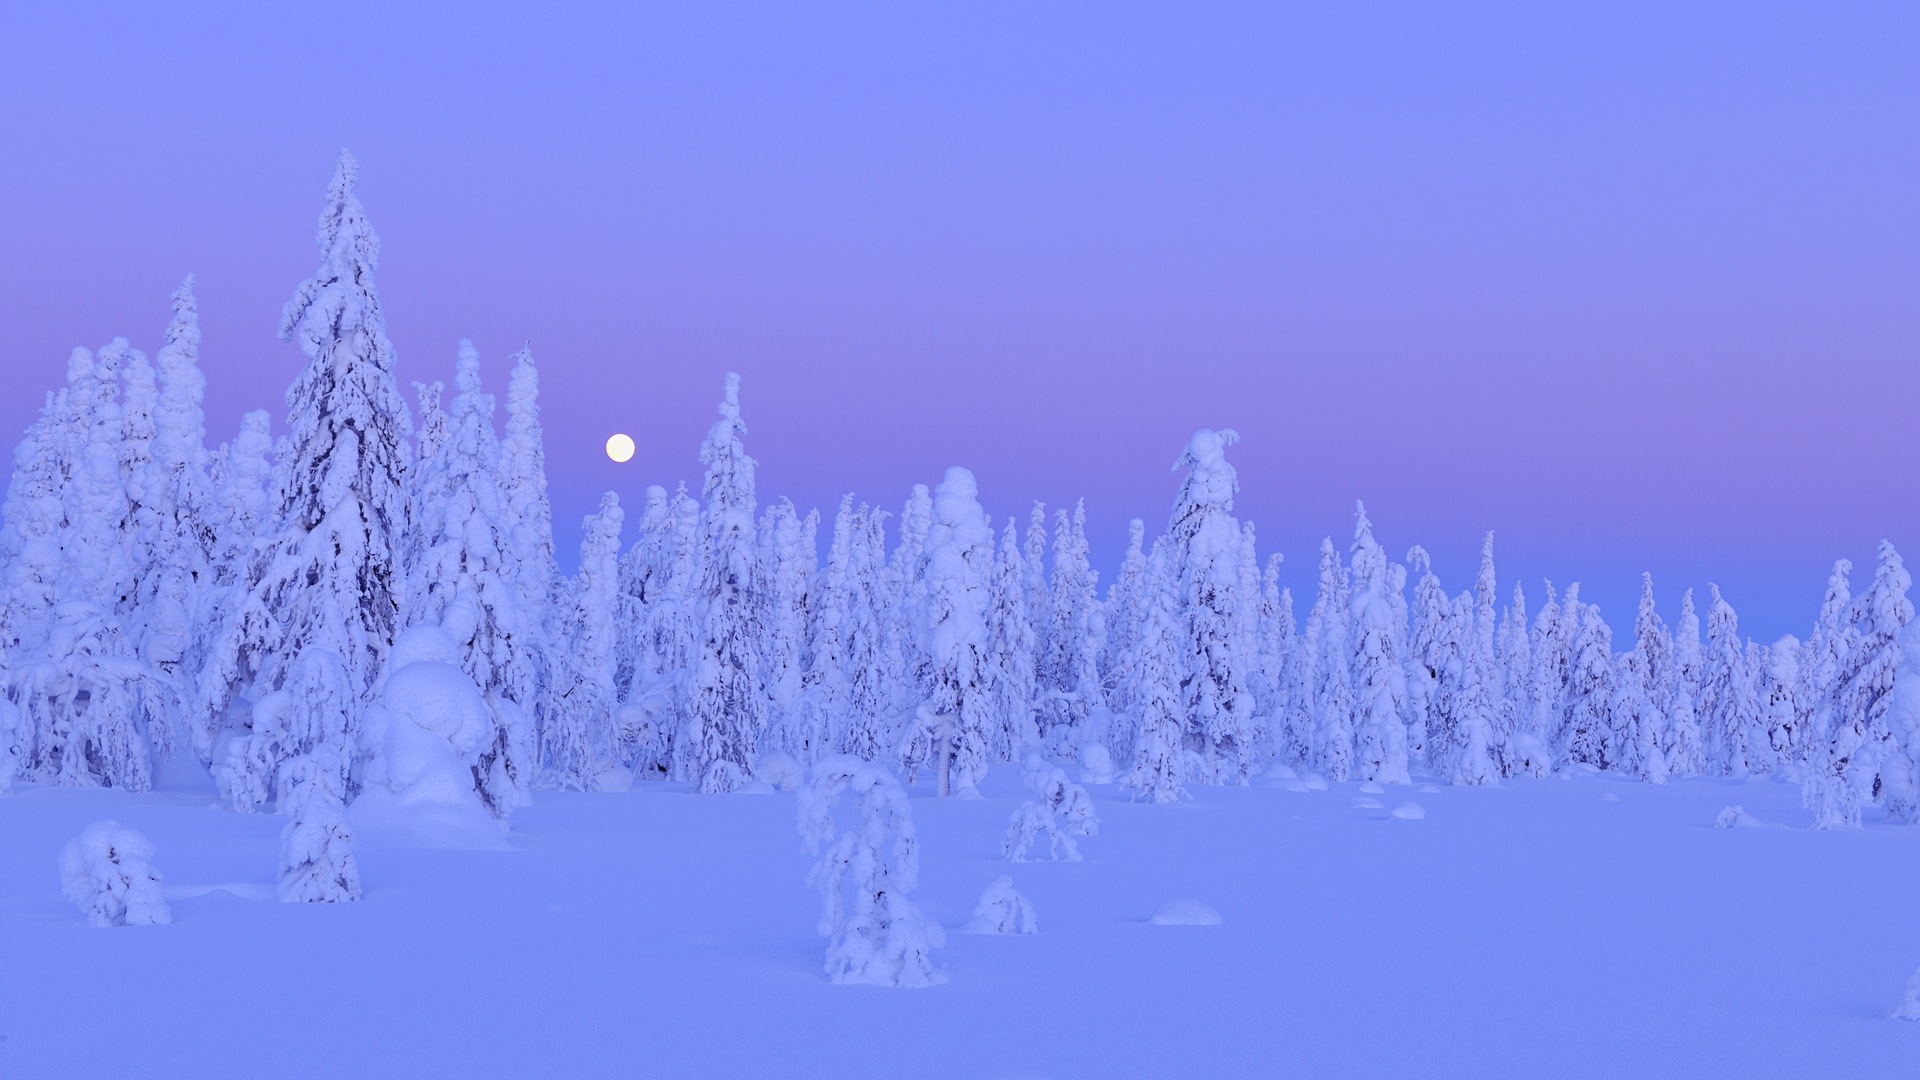 Windows 8 Theme HD Wallpapers: Nieve del invierno noche #12 - 1920x1080